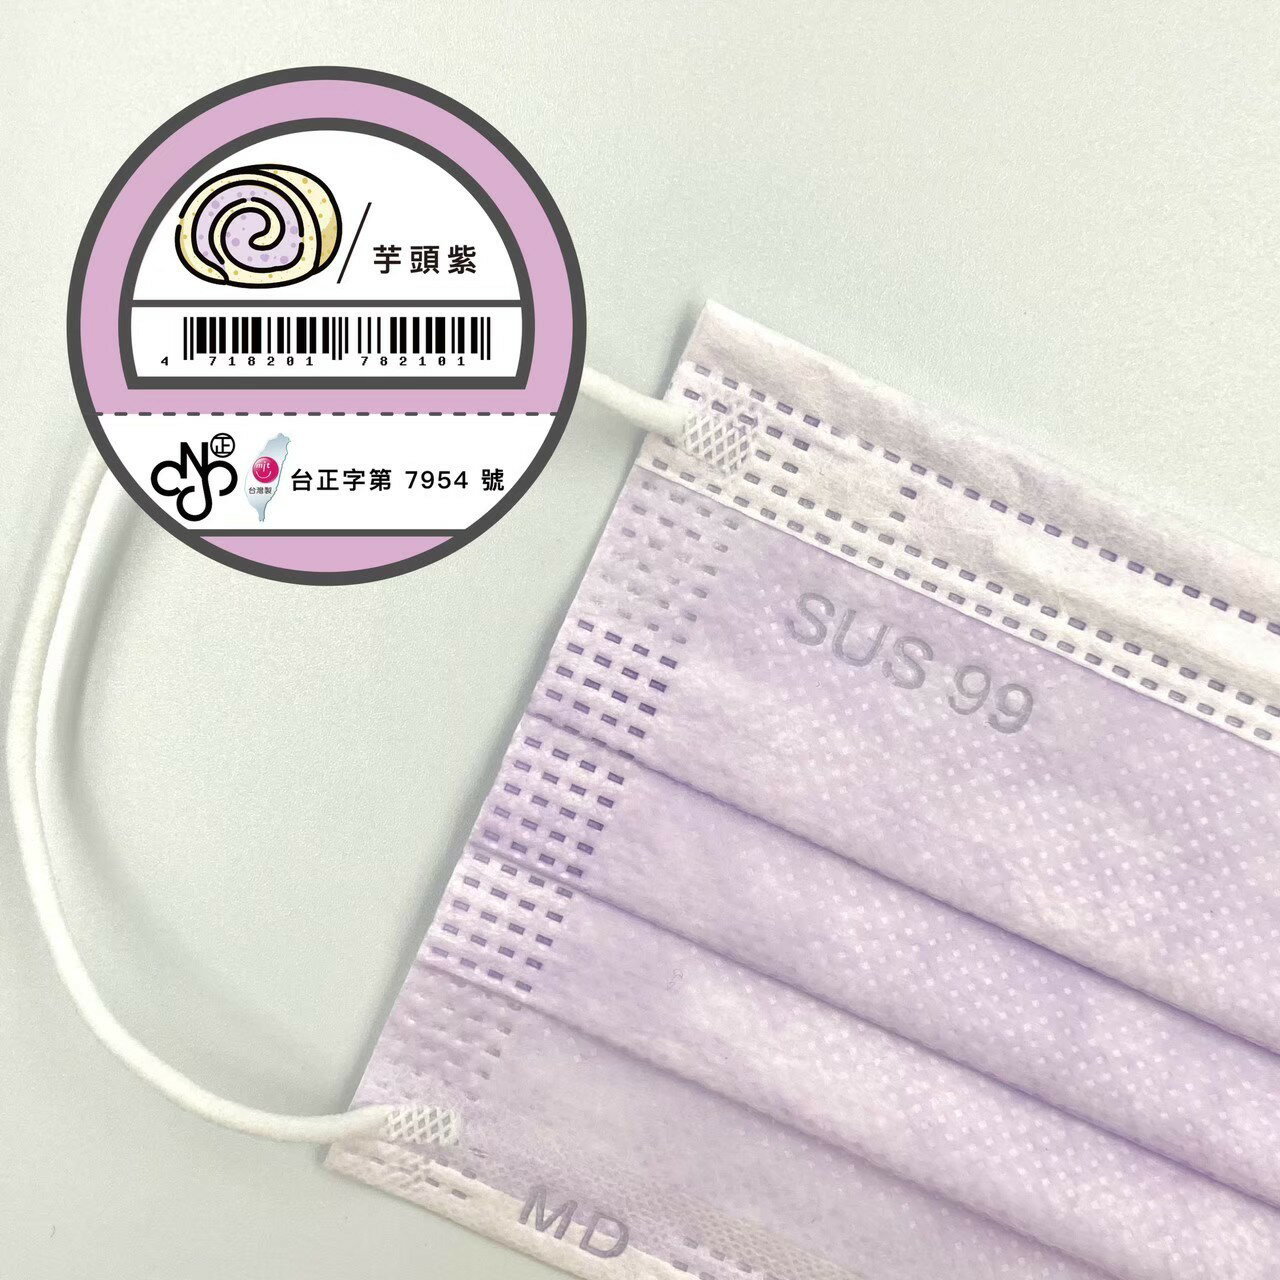 【芋頭紫】🔥醫療口罩 現貨 成人口罩 舒適久 SUS99 盒裝 50入 MIT 台灣製造 醫用面罩 MD雙鋼印👍便宜